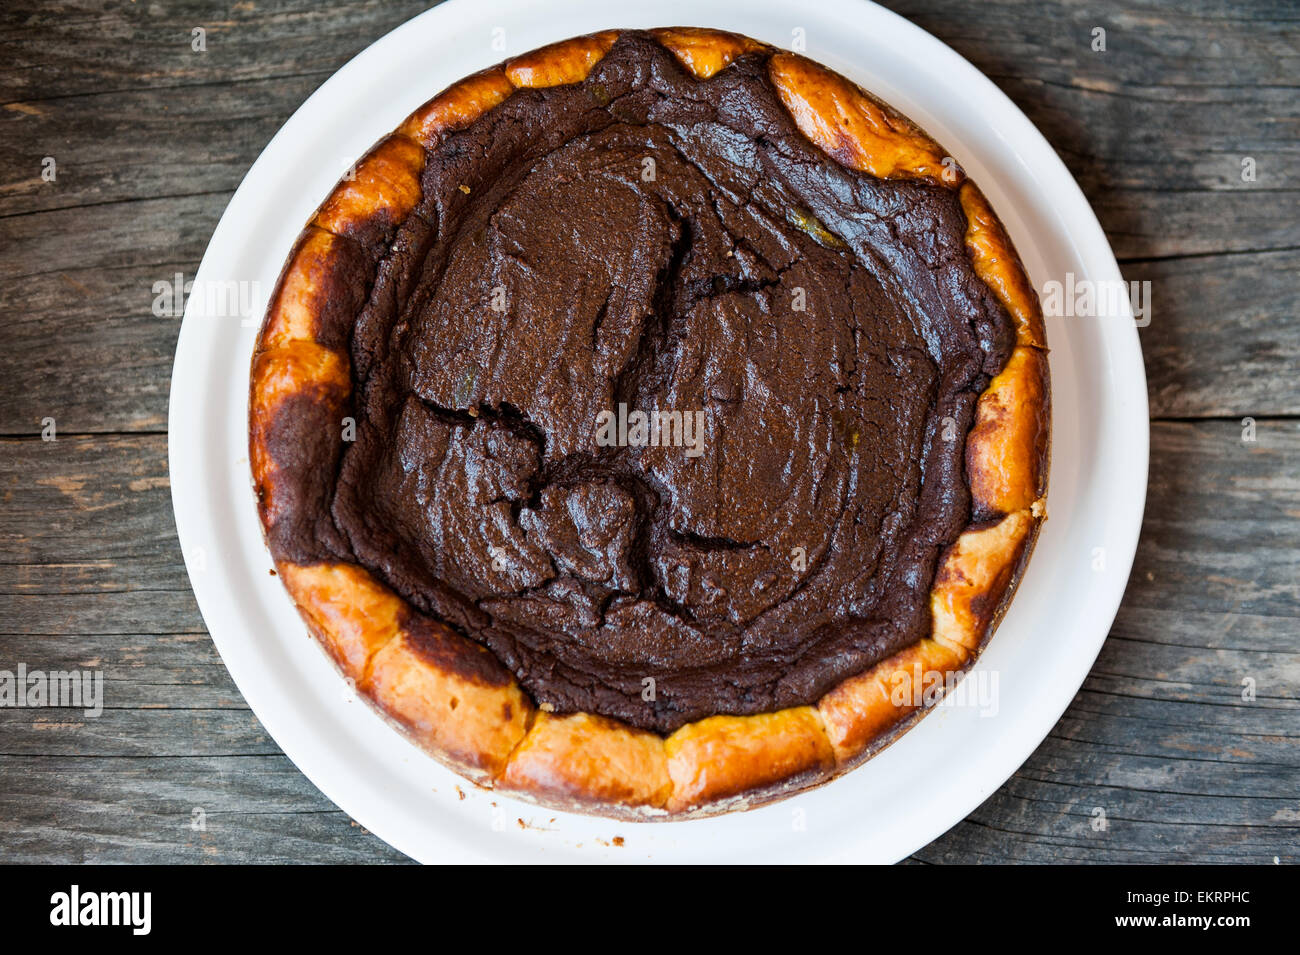 Chocolate pie Stock Photo